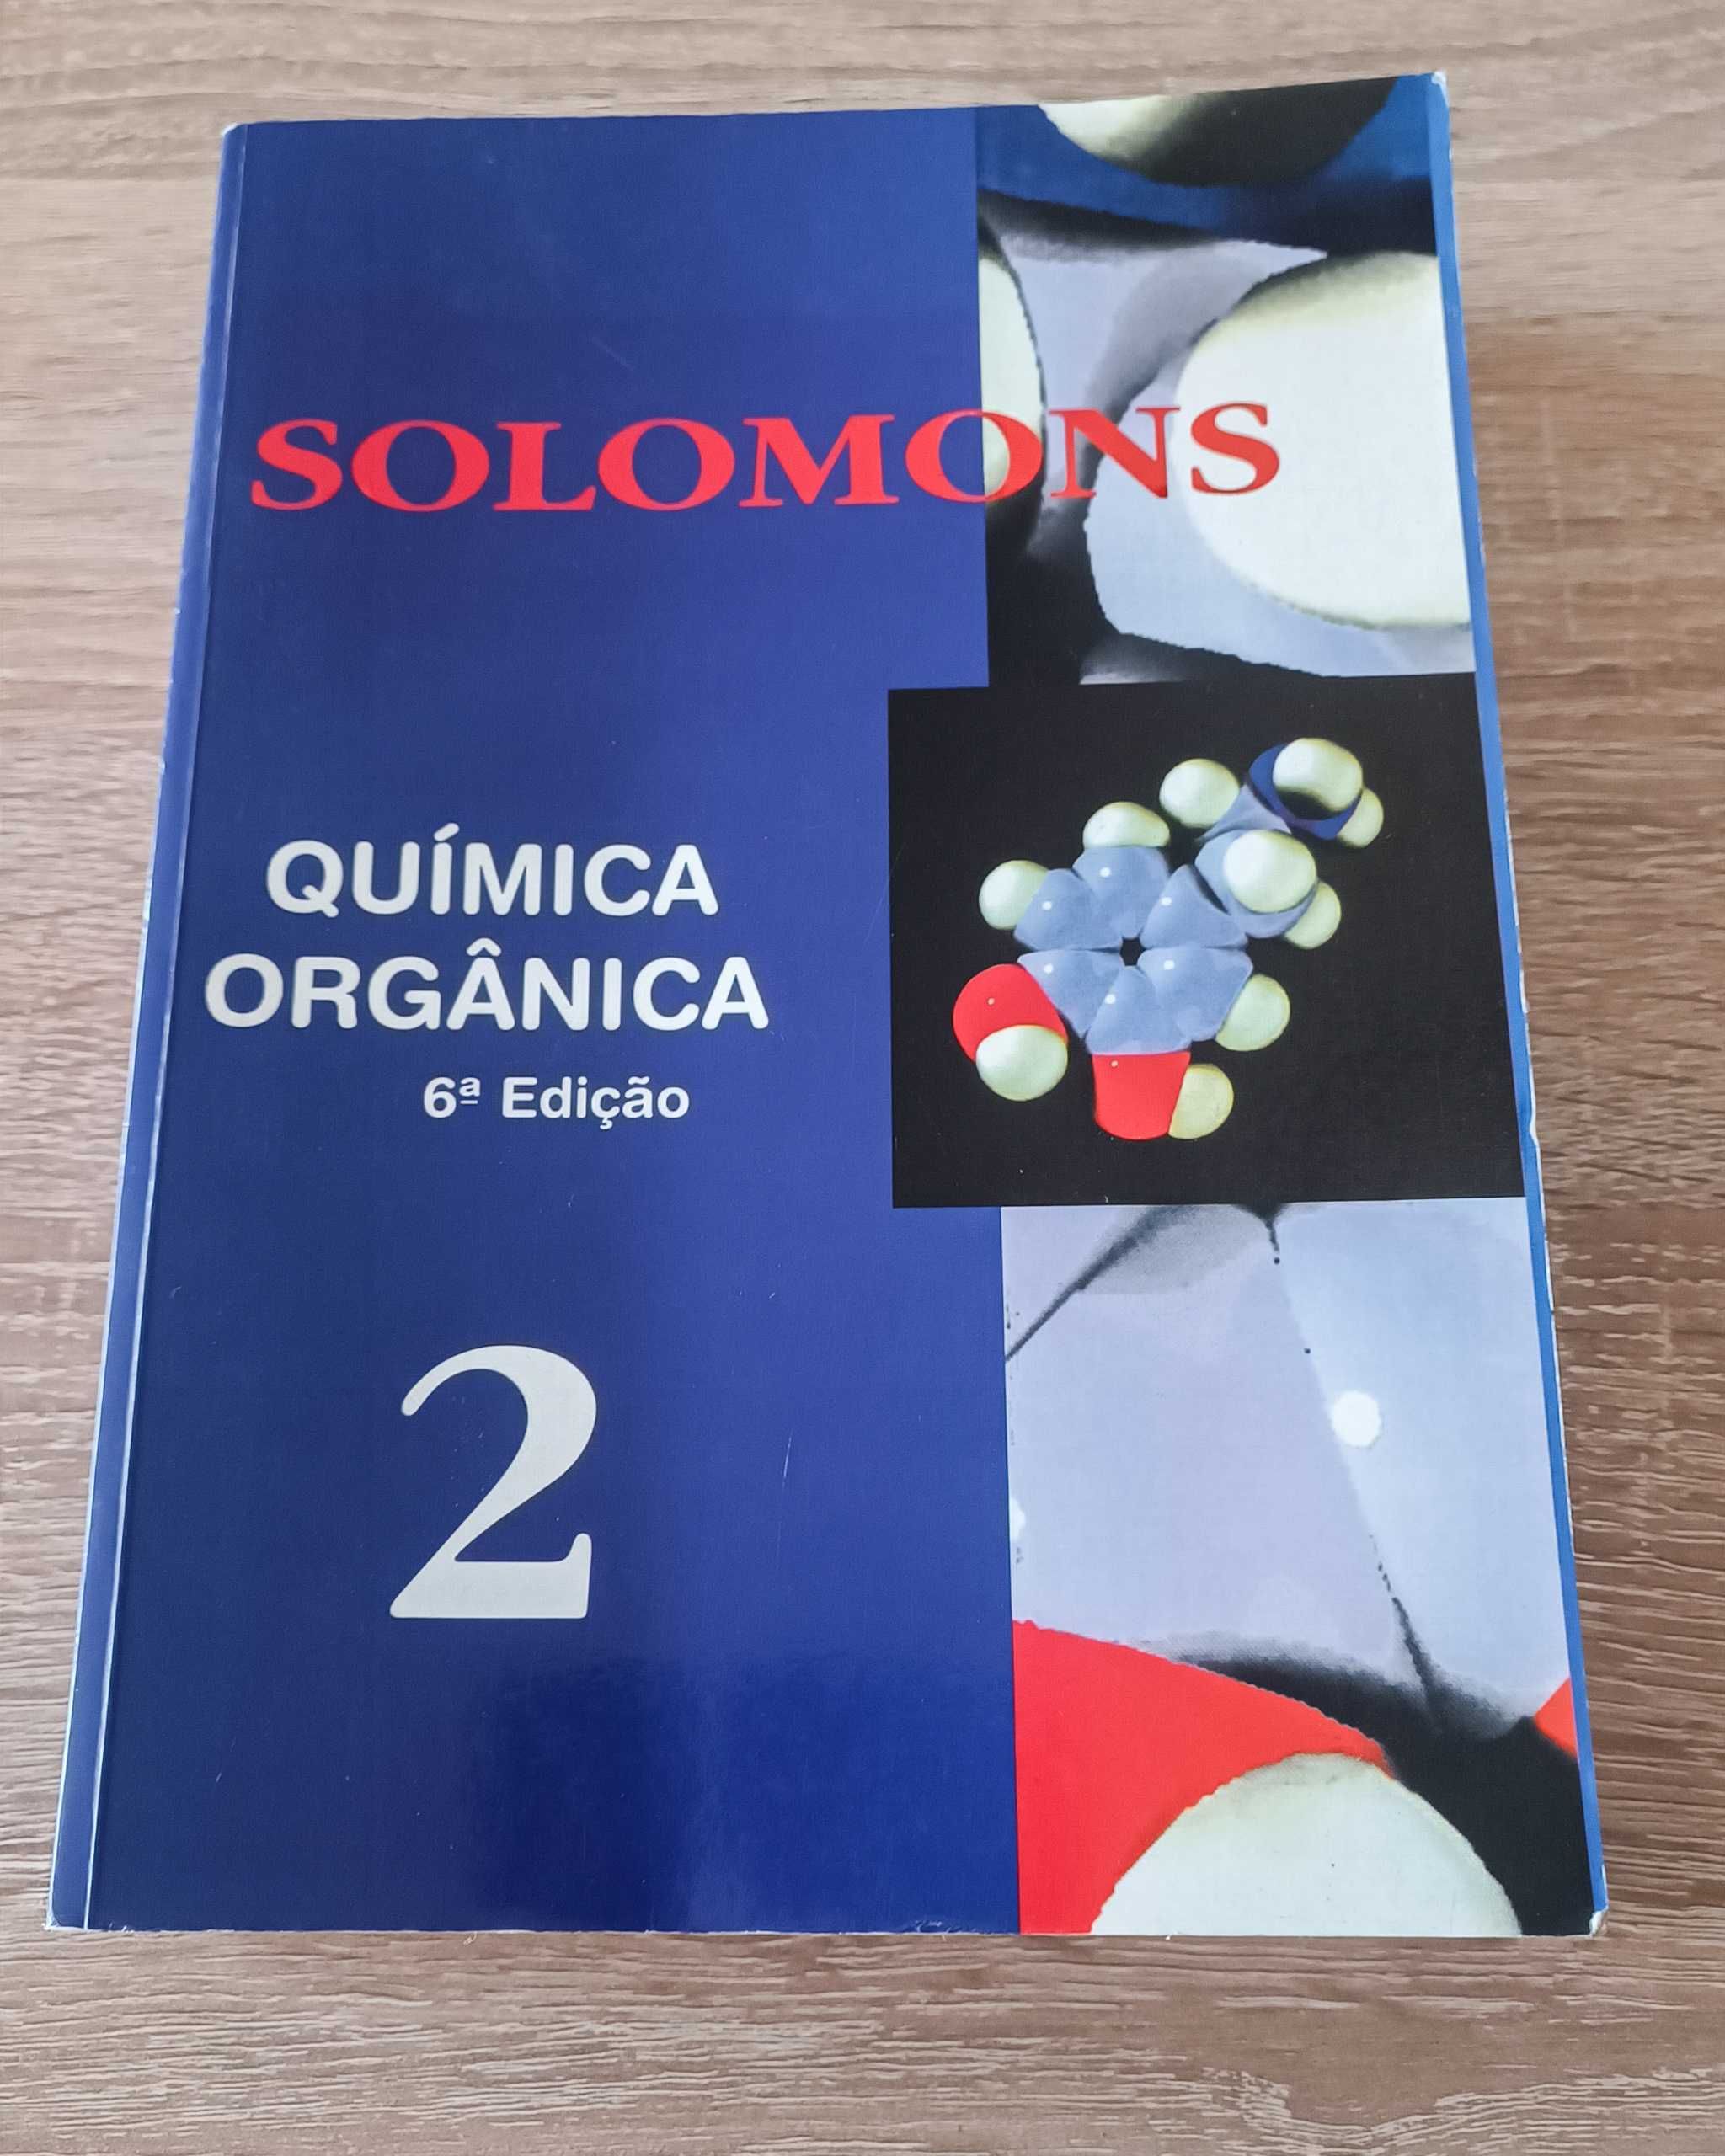 Química Orgânica Solomons - 6ª Edição, Volumes 1 e 2